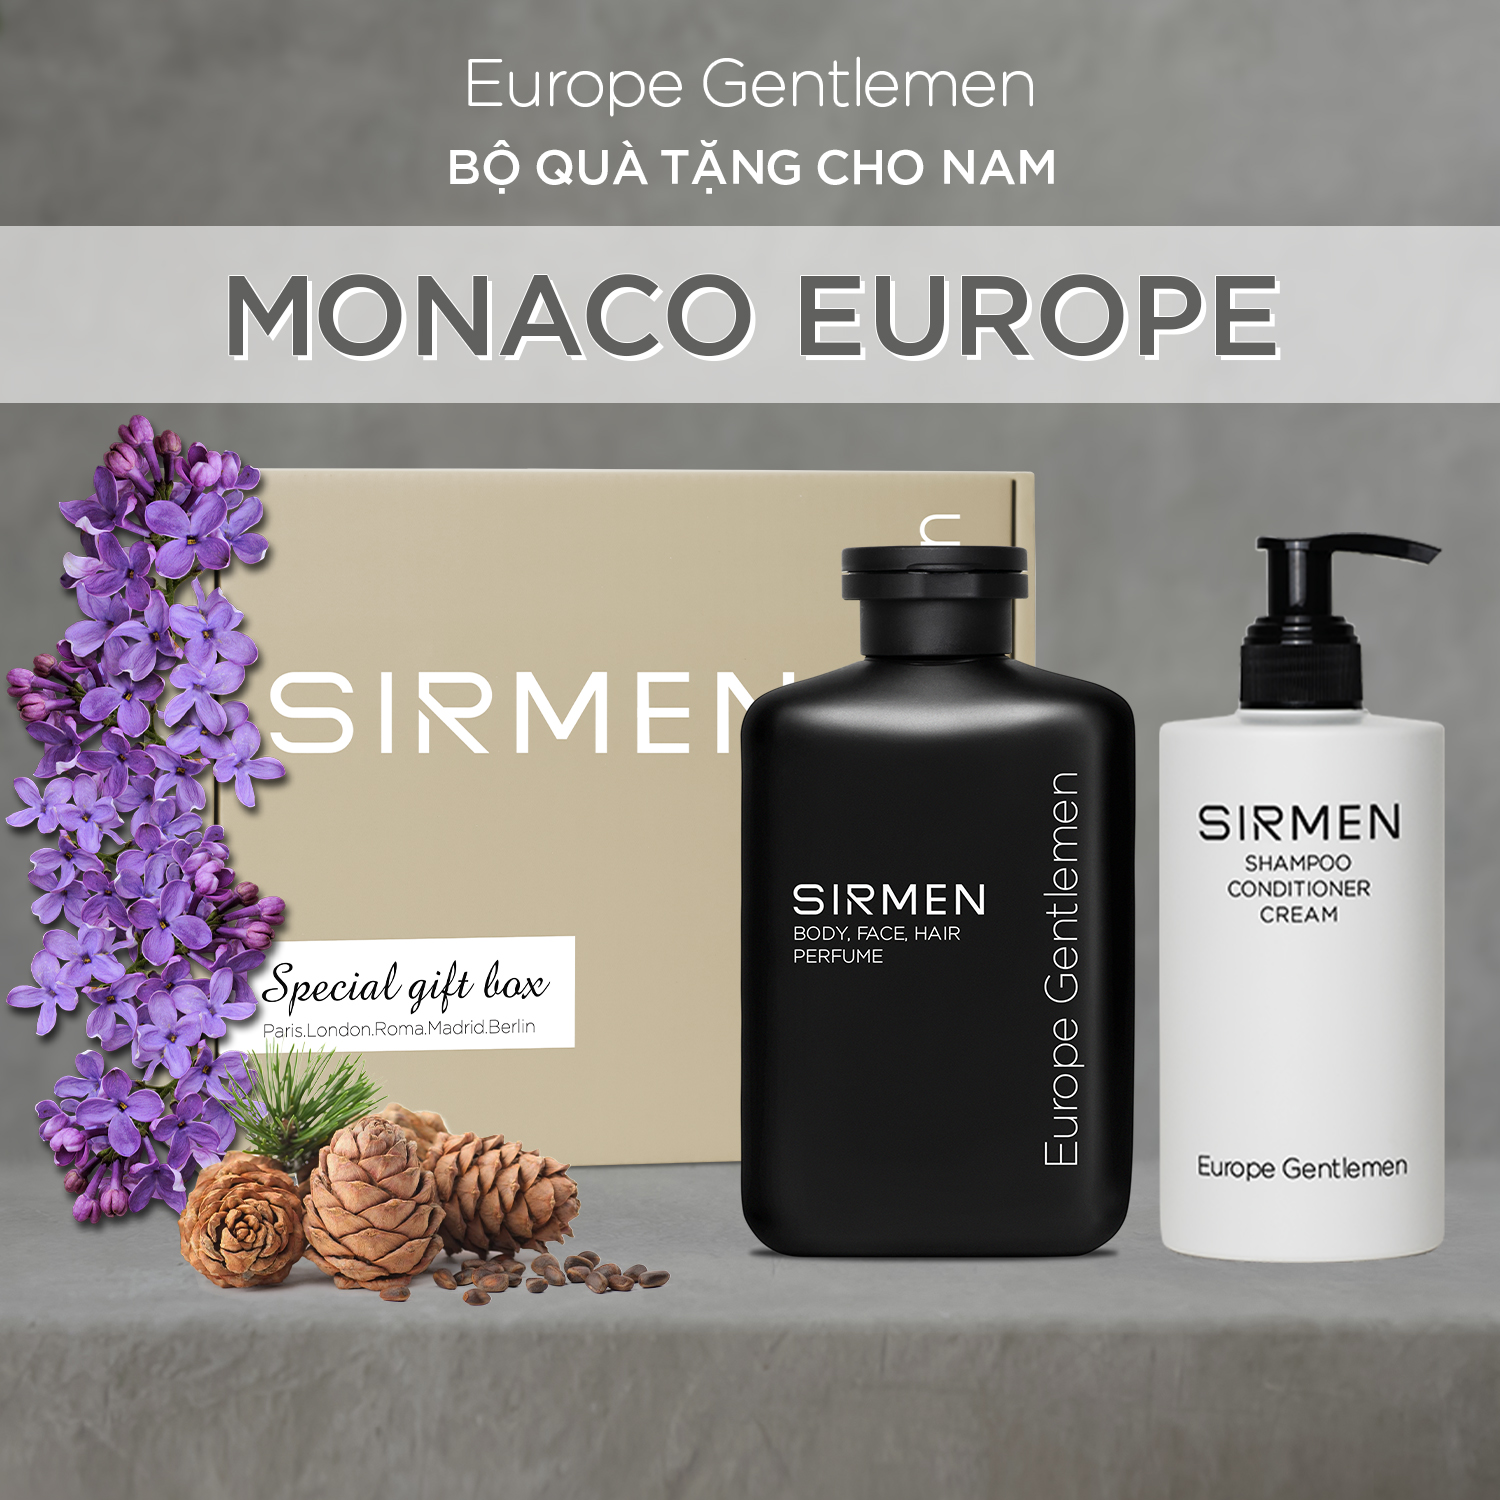 [Combo Monaco Europe] Sữa tắm 350g và Dầu gội 320g nguyên liệu châu Âu SIRMEN Europe Gentlemen cao cấp 100g chiết xuất tự nhiên